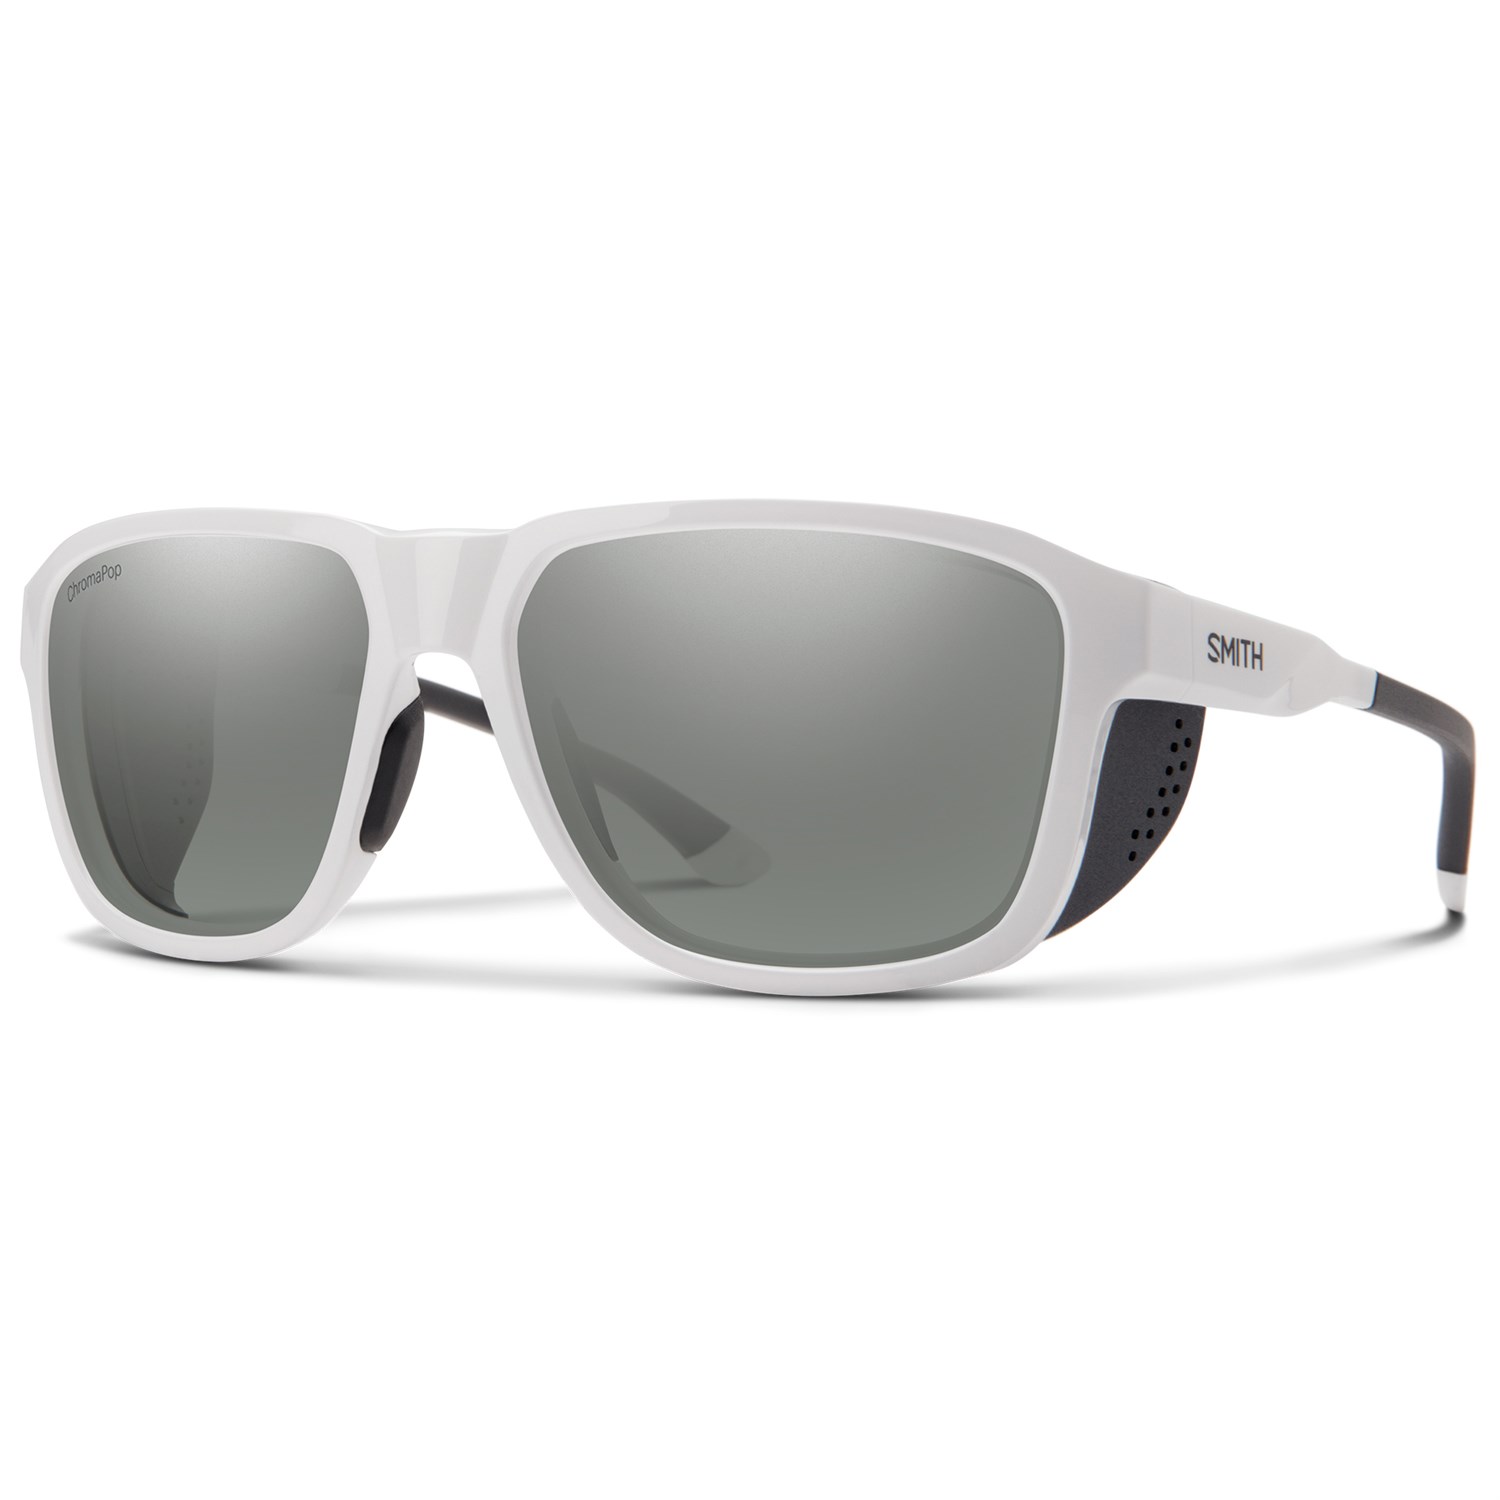 smith sunglasses silver Sticker/decal 